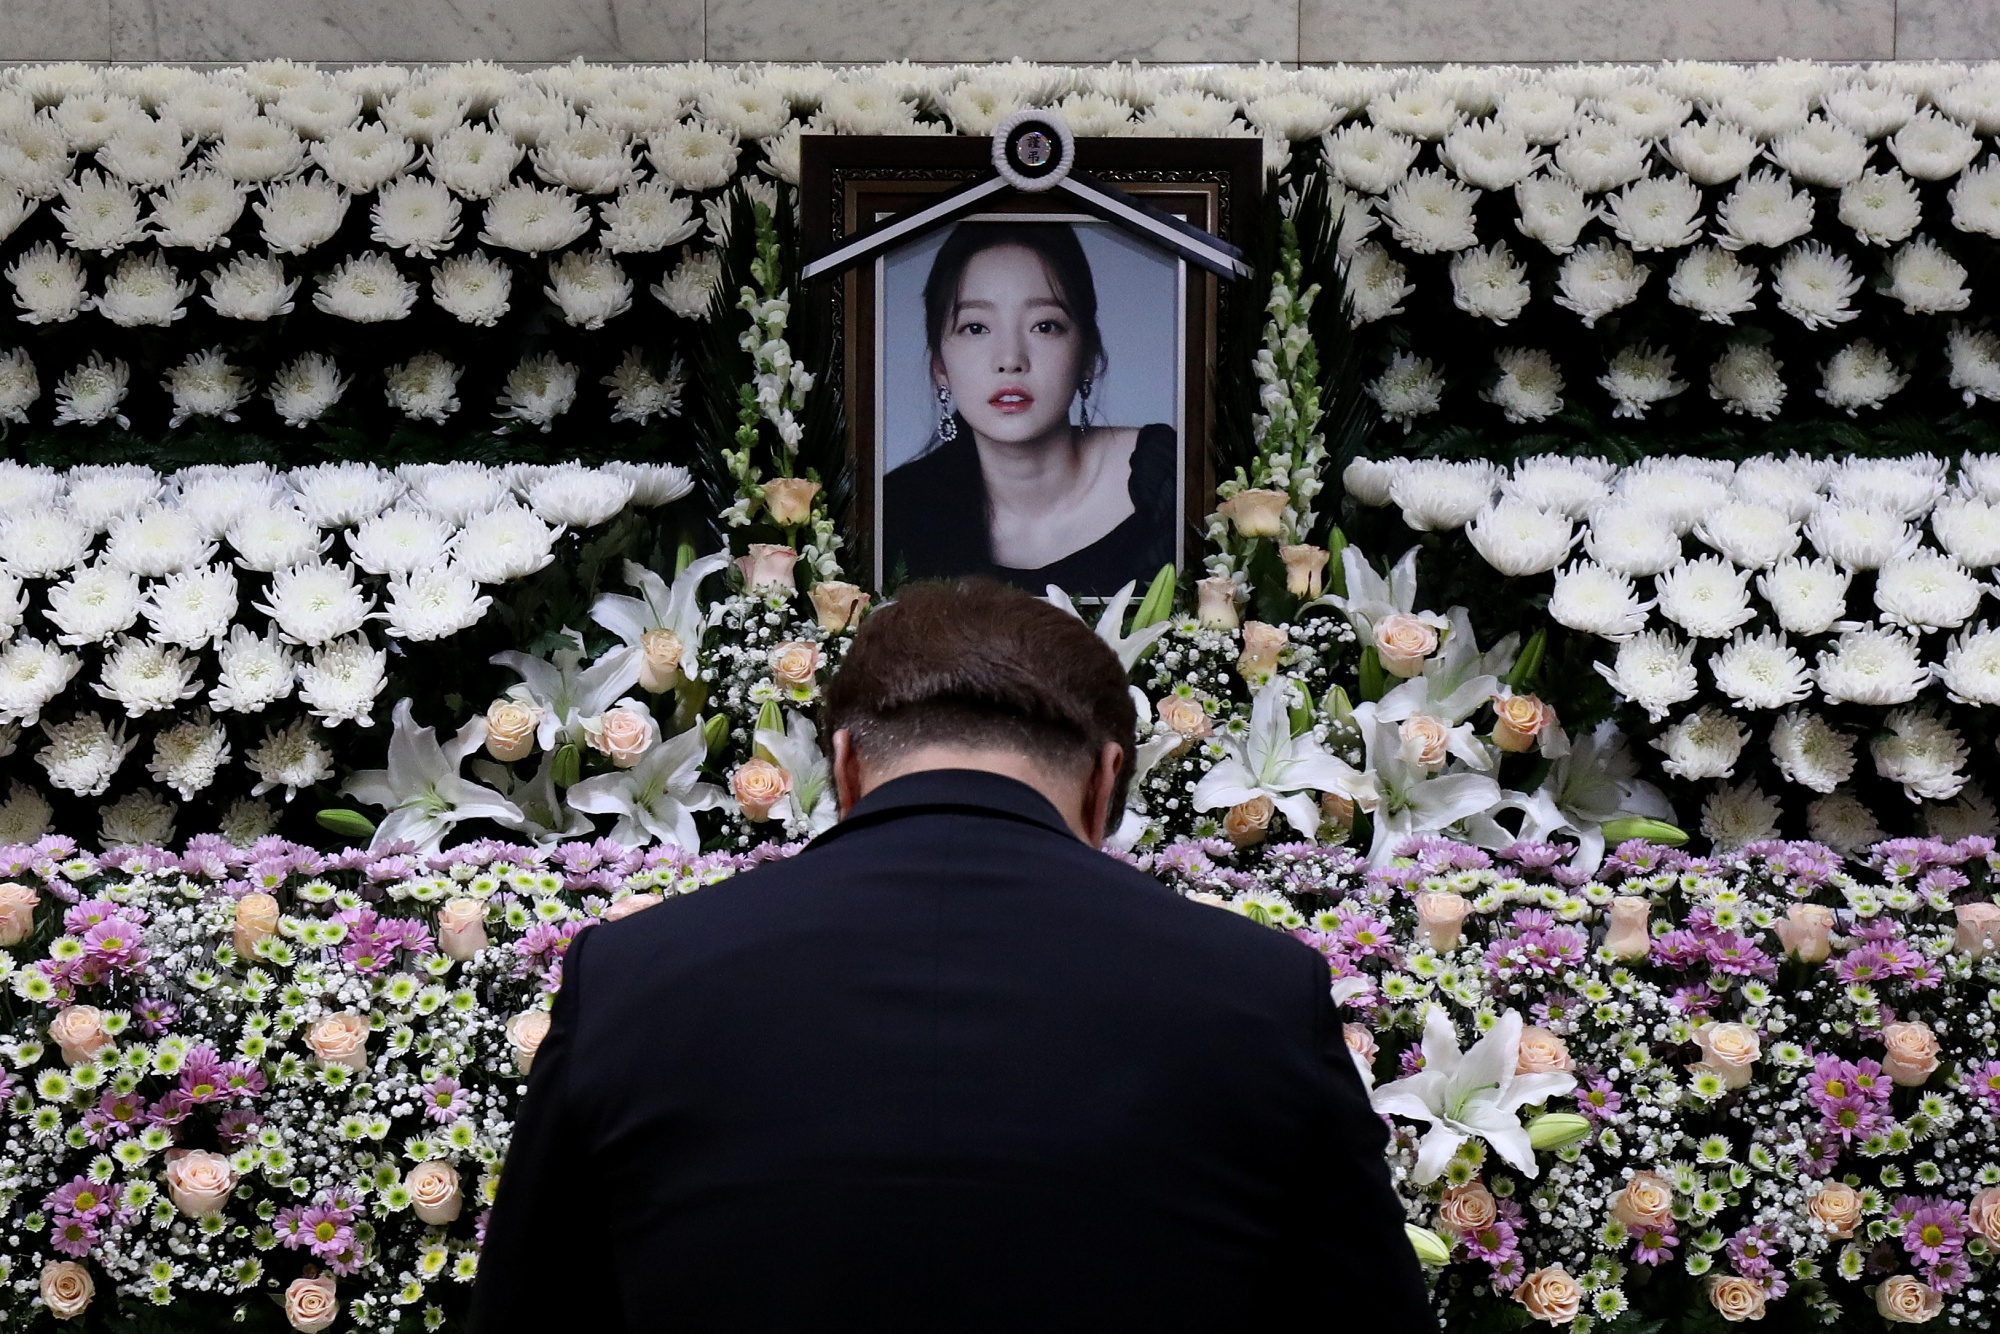 Hd Korean Rape Porn - K-Pop Suicide Sparks a Reckoning on Revenge Porn, Sexual Assault - Bloomberg